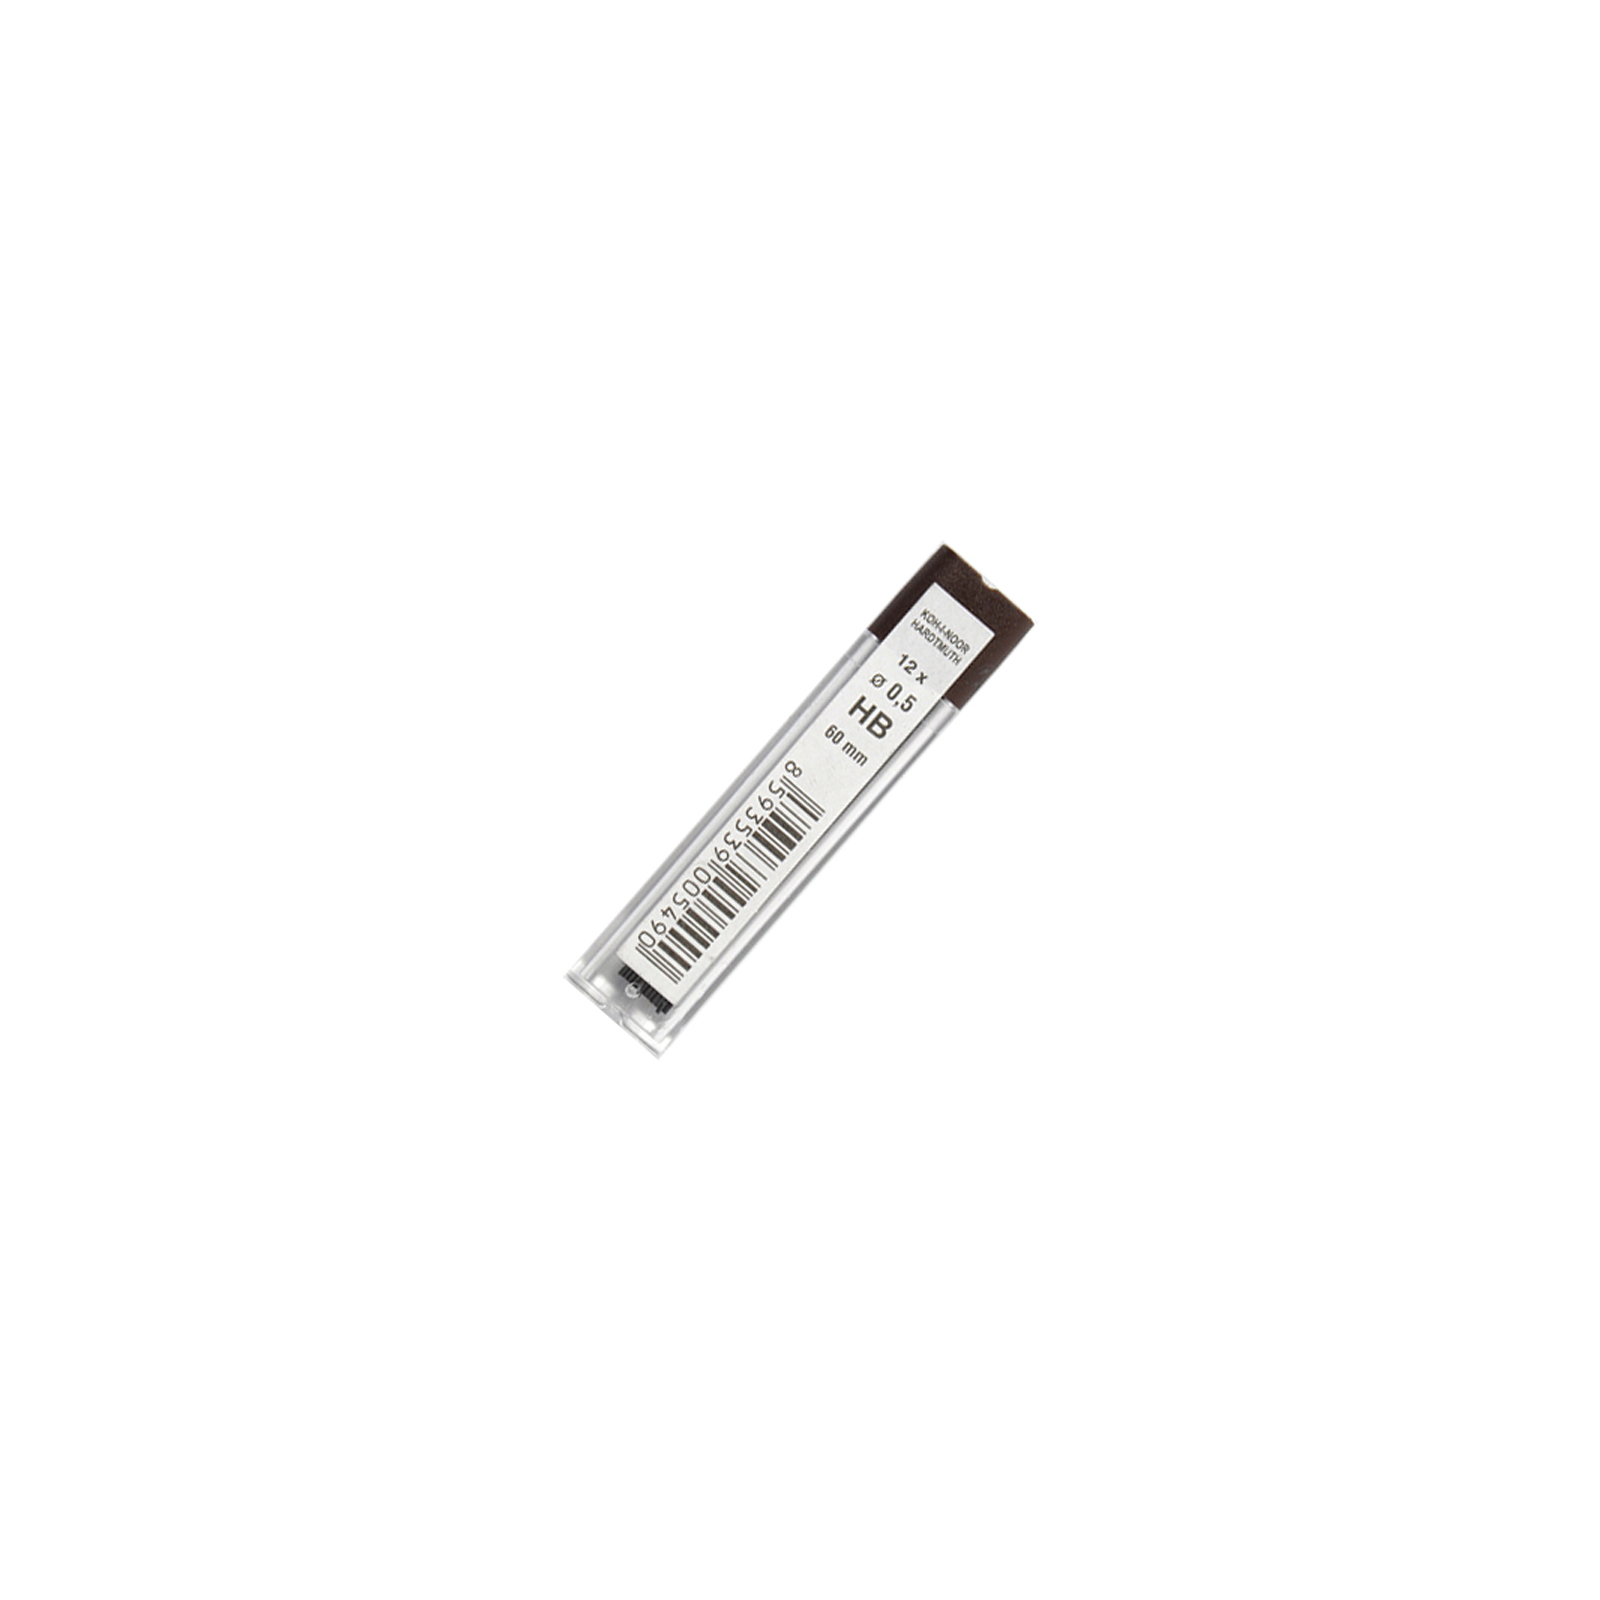 Грифель для механического карандаша Koh-i-Noor 4152.HB, 0.5 мм, 12шт (41520HB005PK)